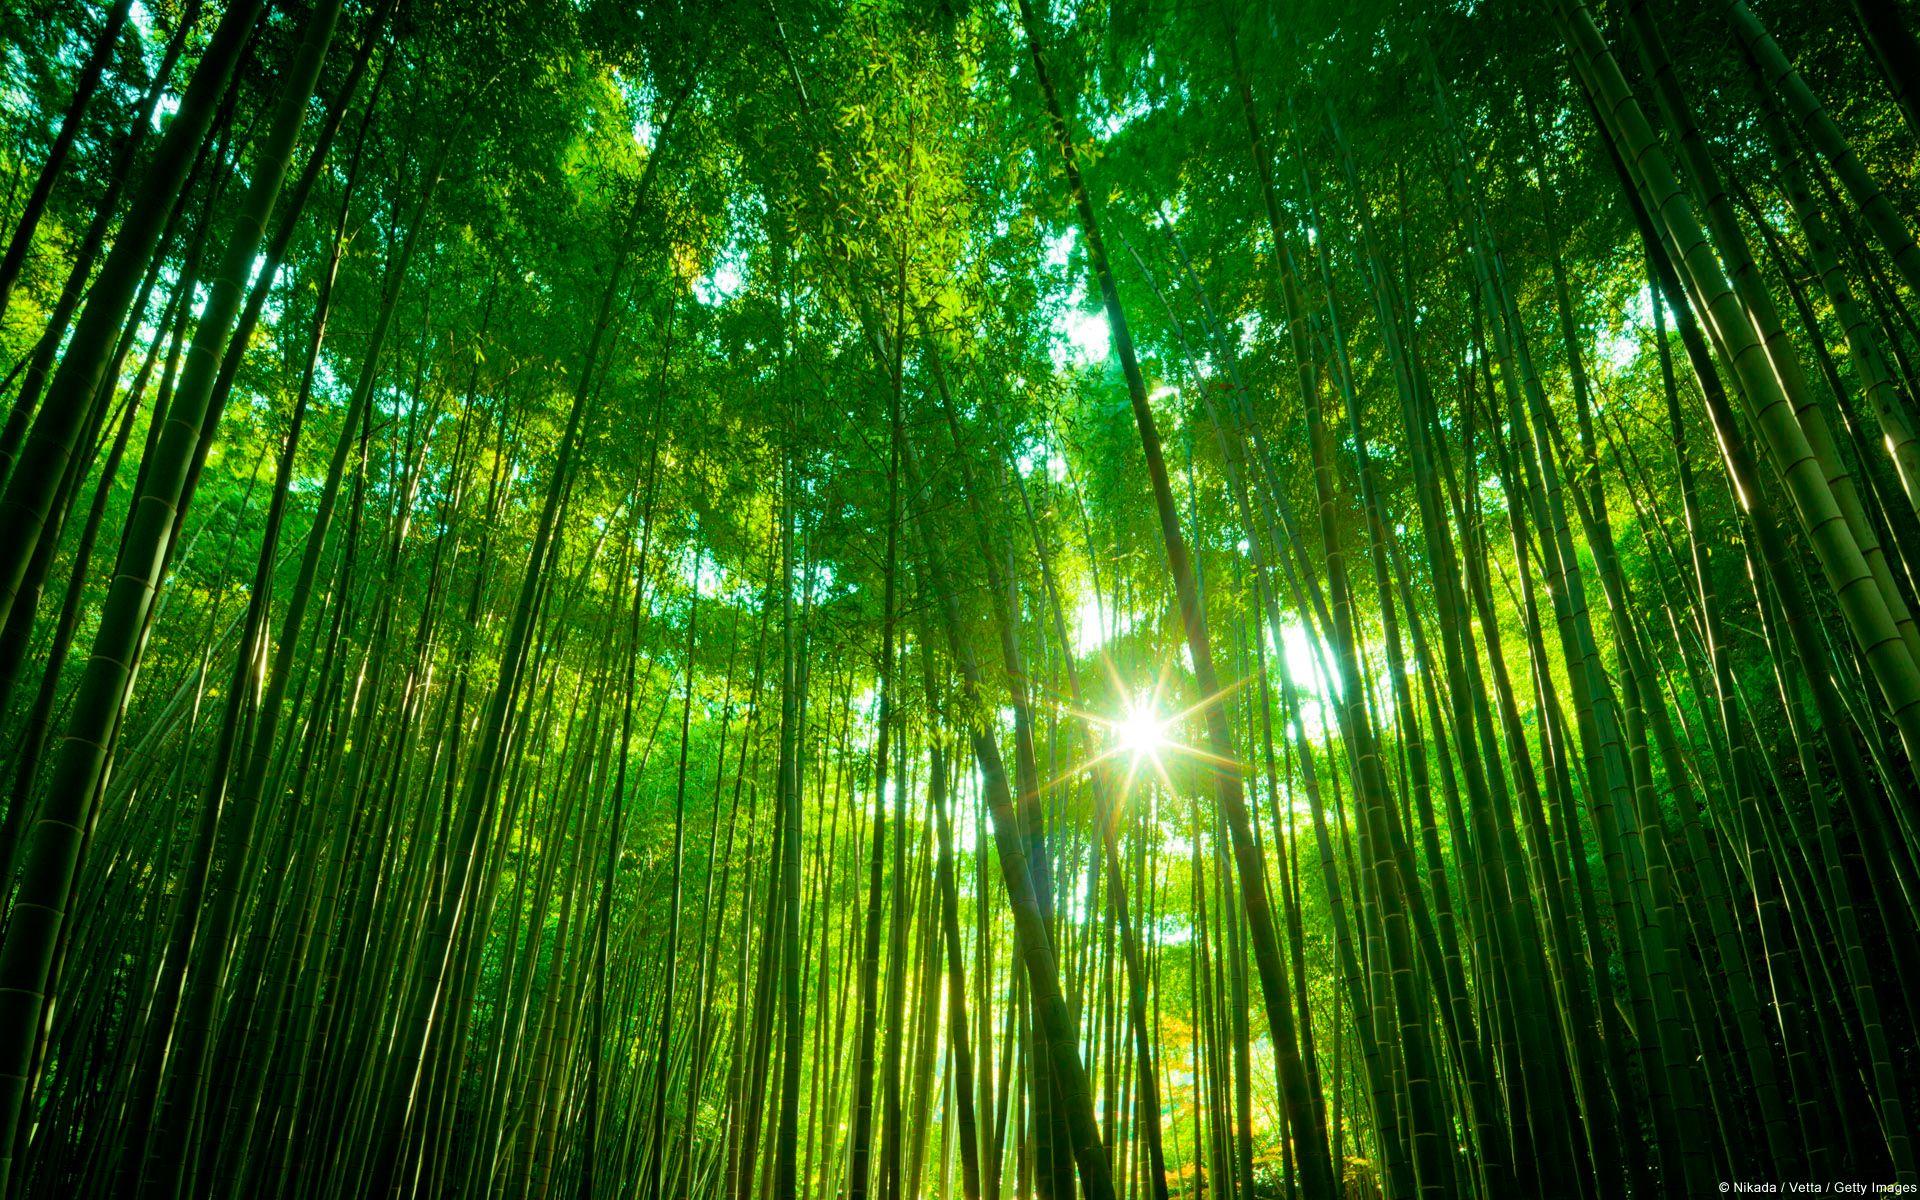 زیباترین تصویر از درختان غول پیکر بامبو در جنگل معروف چین 